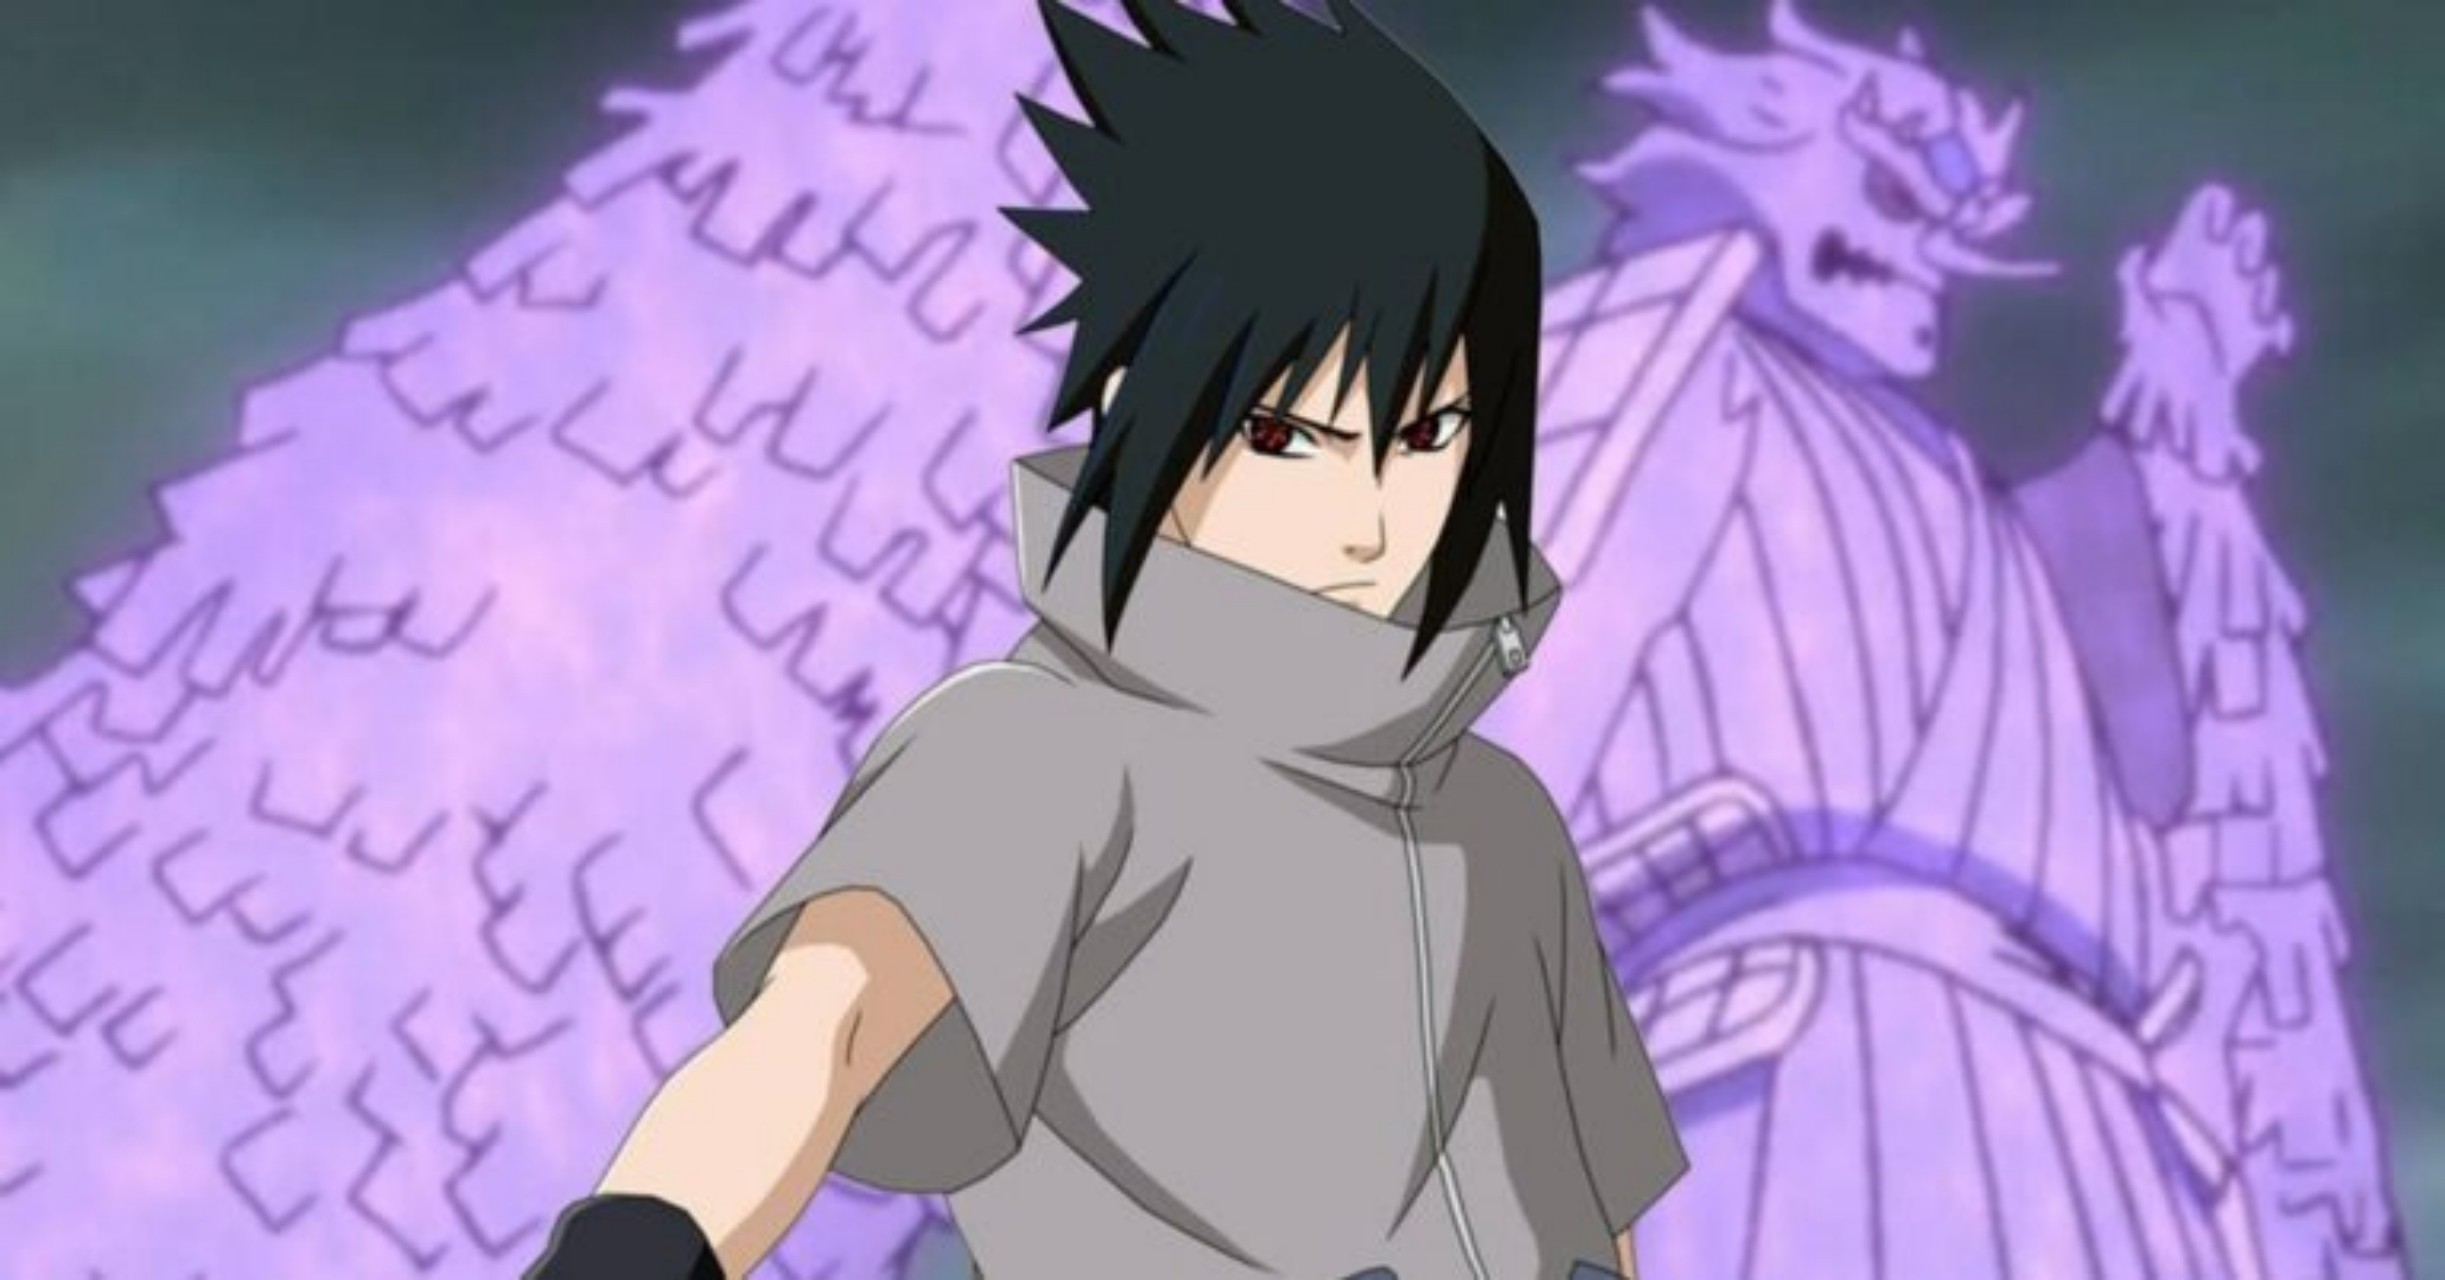 Existe um detalhe sobre o Susano’o do Sasuke que poucos notaram em Naruto Shippuden